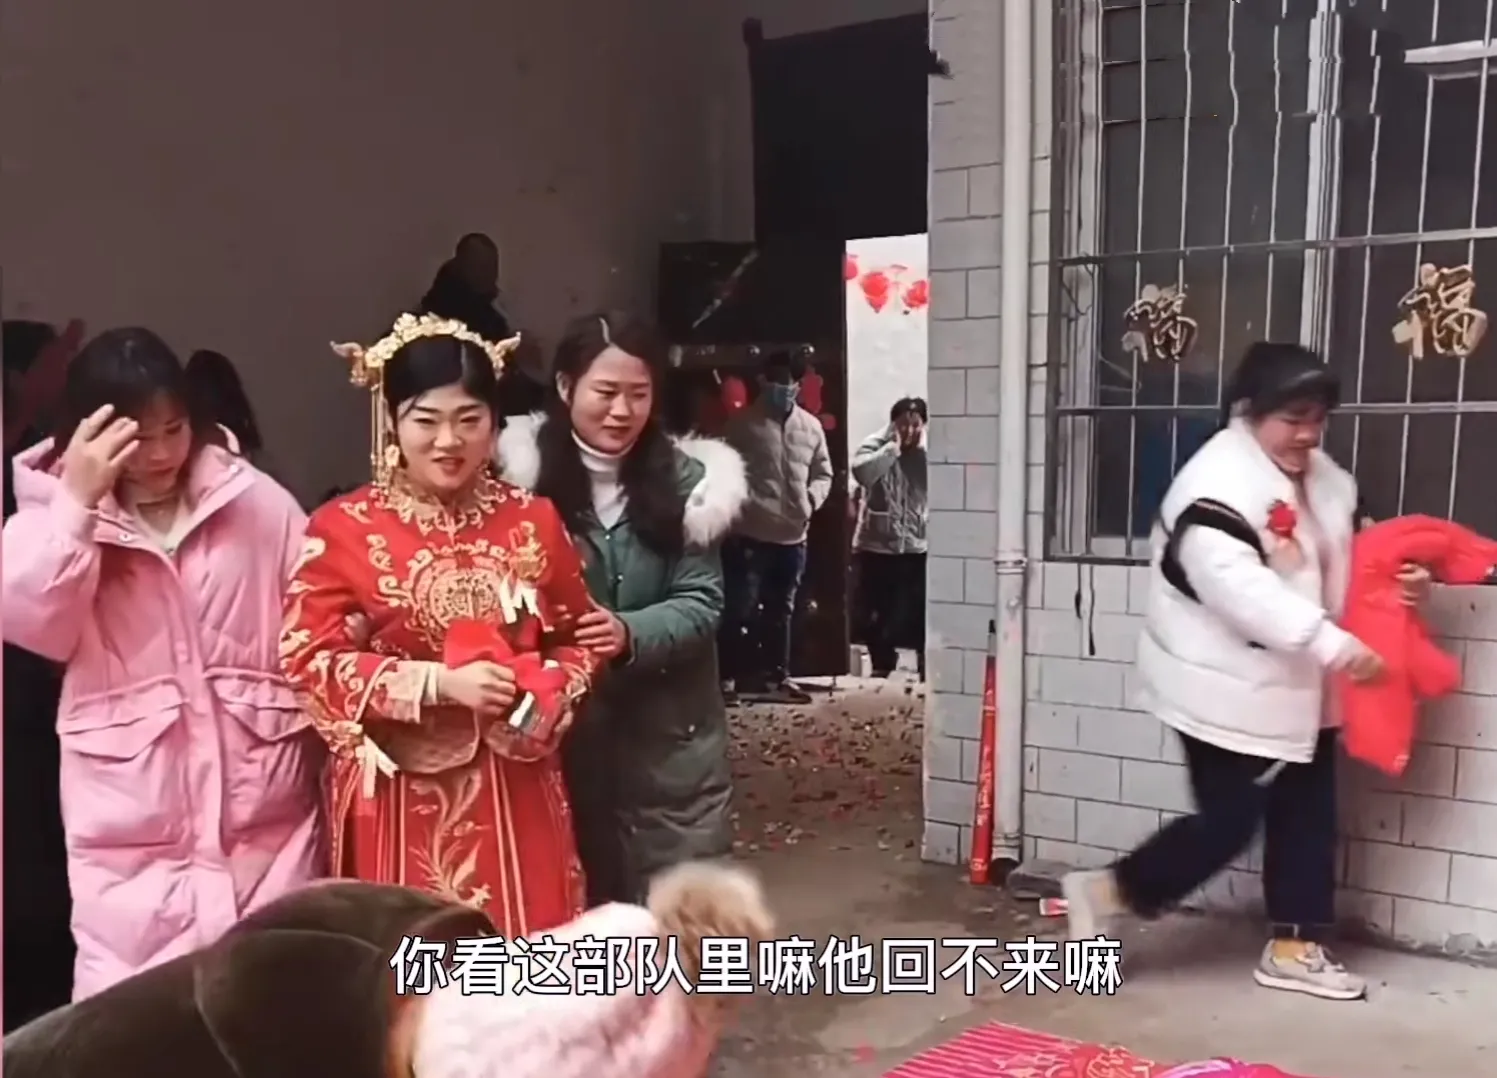 1月26日 河南周口举行了一场特殊的婚礼 婚礼上只看到新娘 没看到新郎 却意外收获了很多网友的祝福 只见新娘穿着红色嫁衣